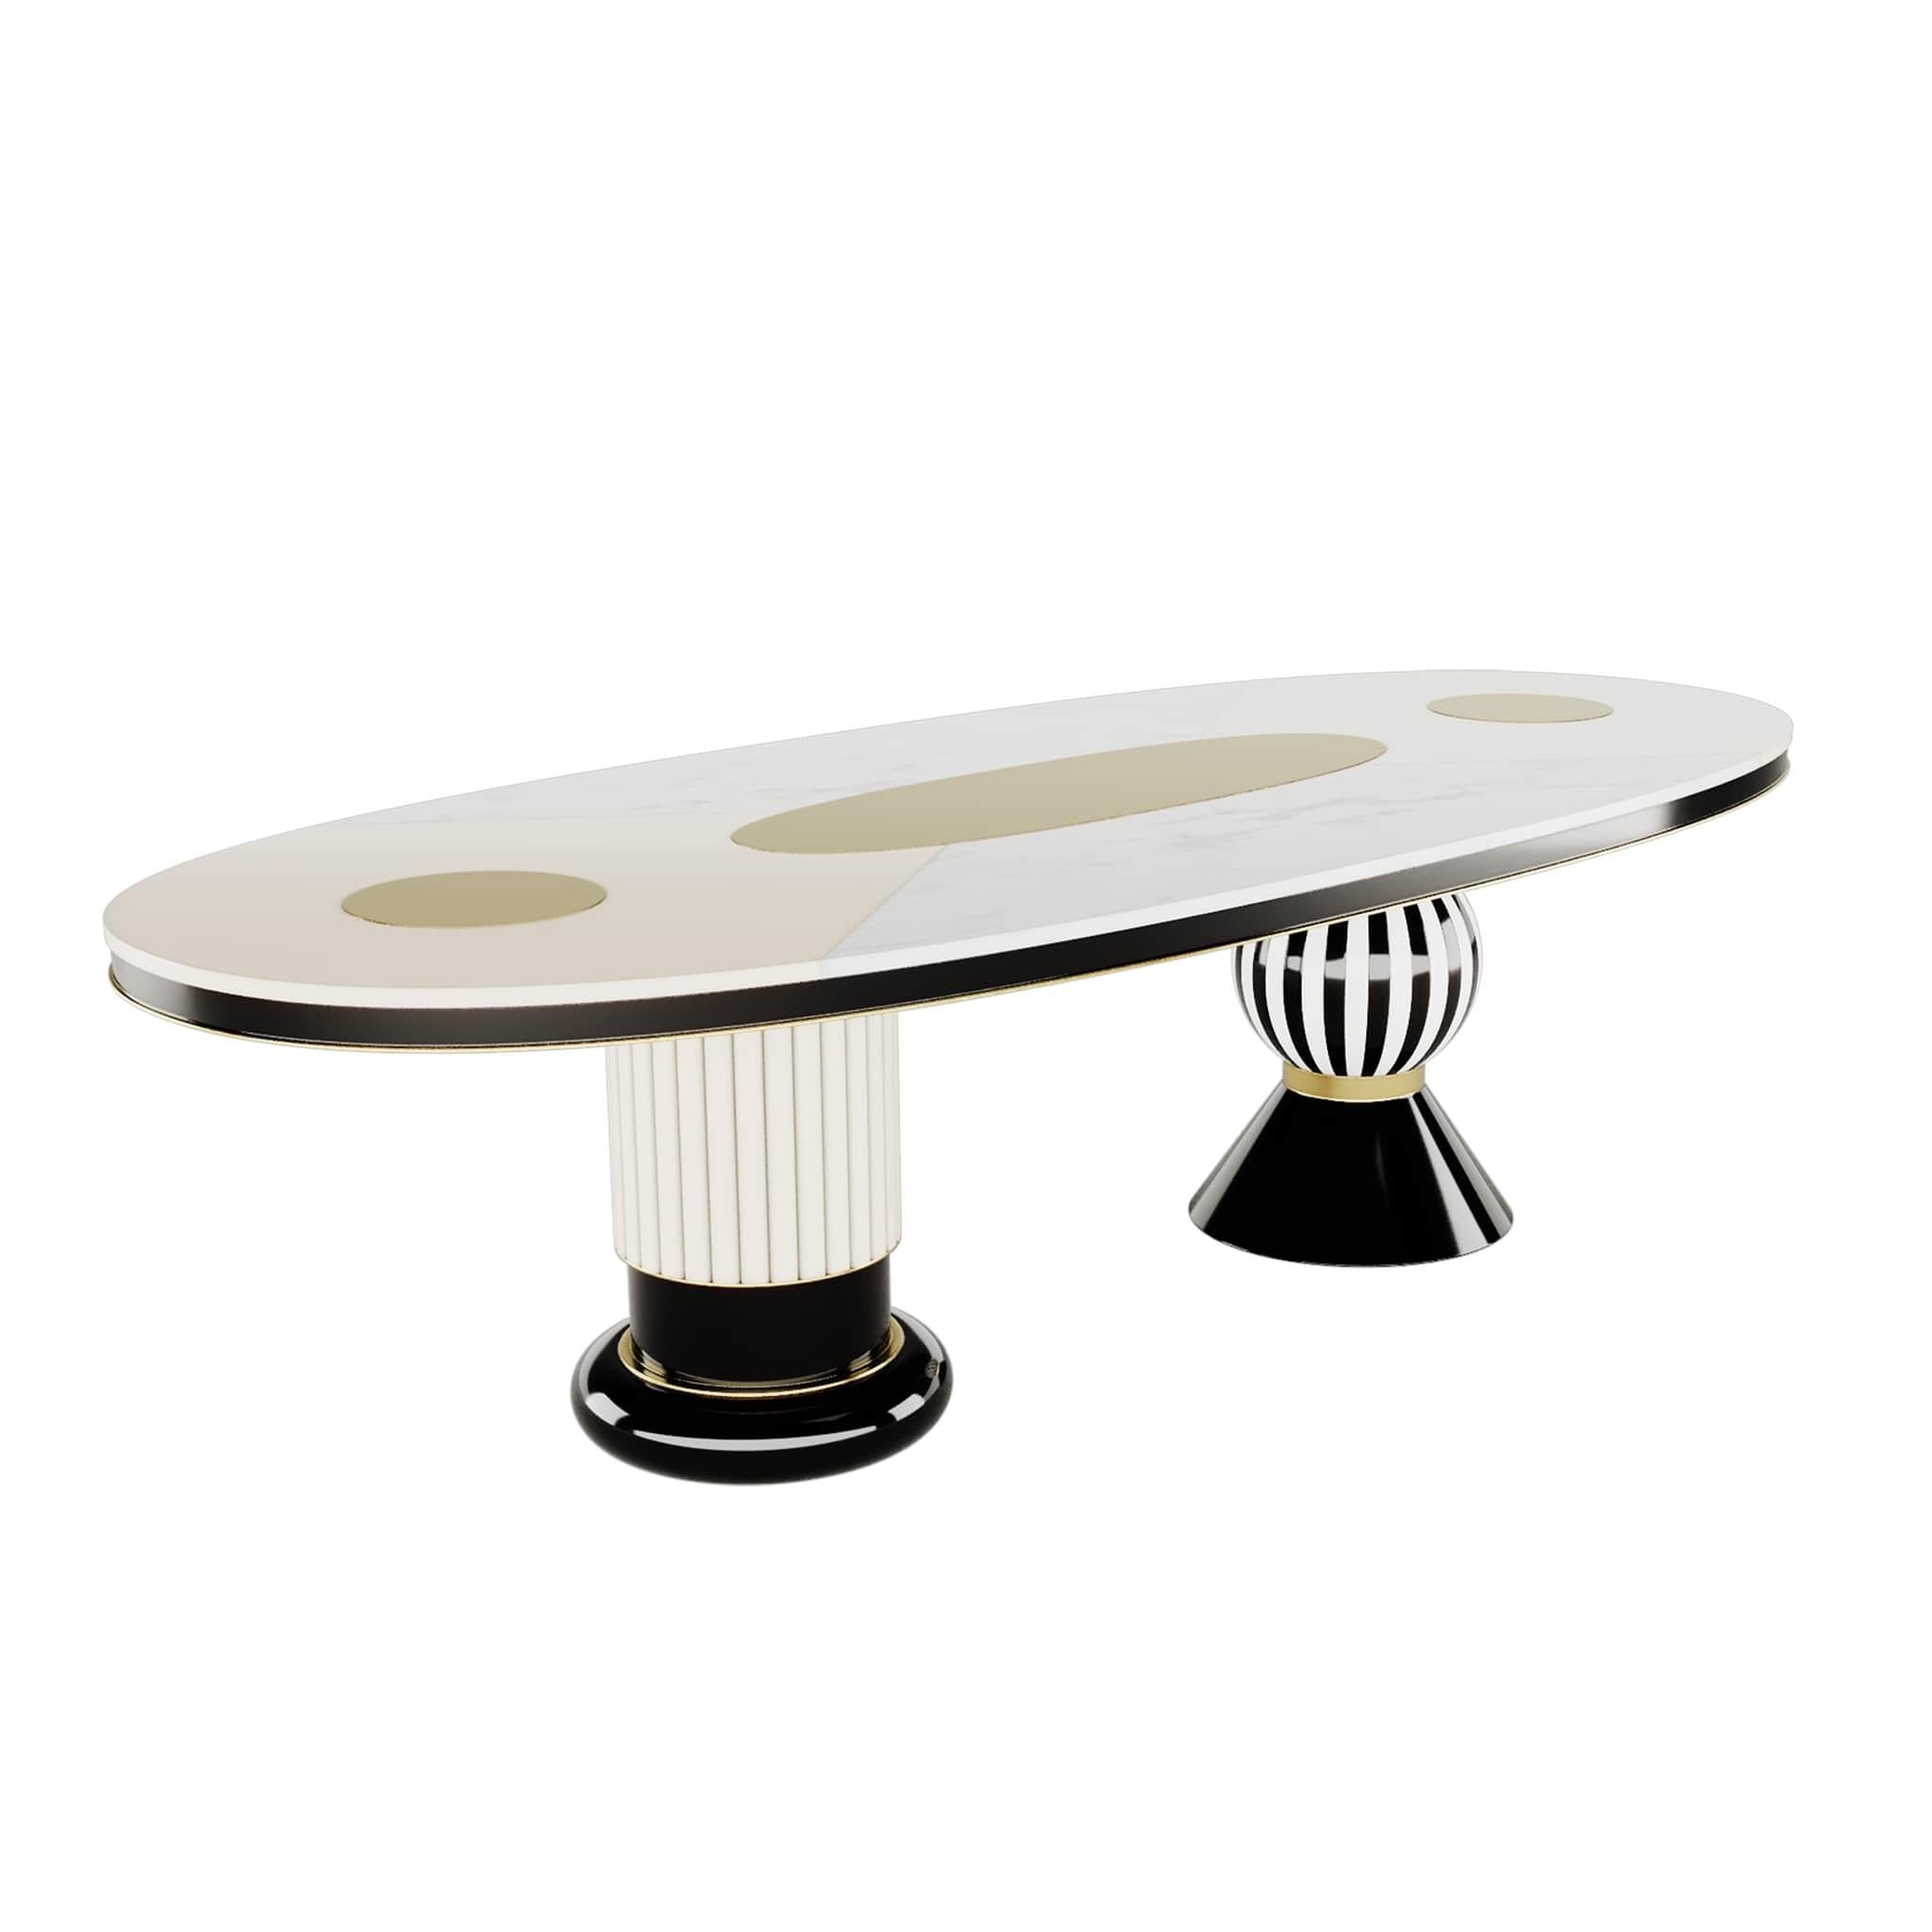 Moderner ovaler Esstisch Schwarz-weiße Platte, Gold-Edelstahl-Details   Fuschia Esstisch
Der Esstisch Fuschia ist eine Wiederbelebung des Charmes und der Ausstrahlung des Memphis-Stils. Ein Esstisch mit weißer Holzplatte, der mit seiner